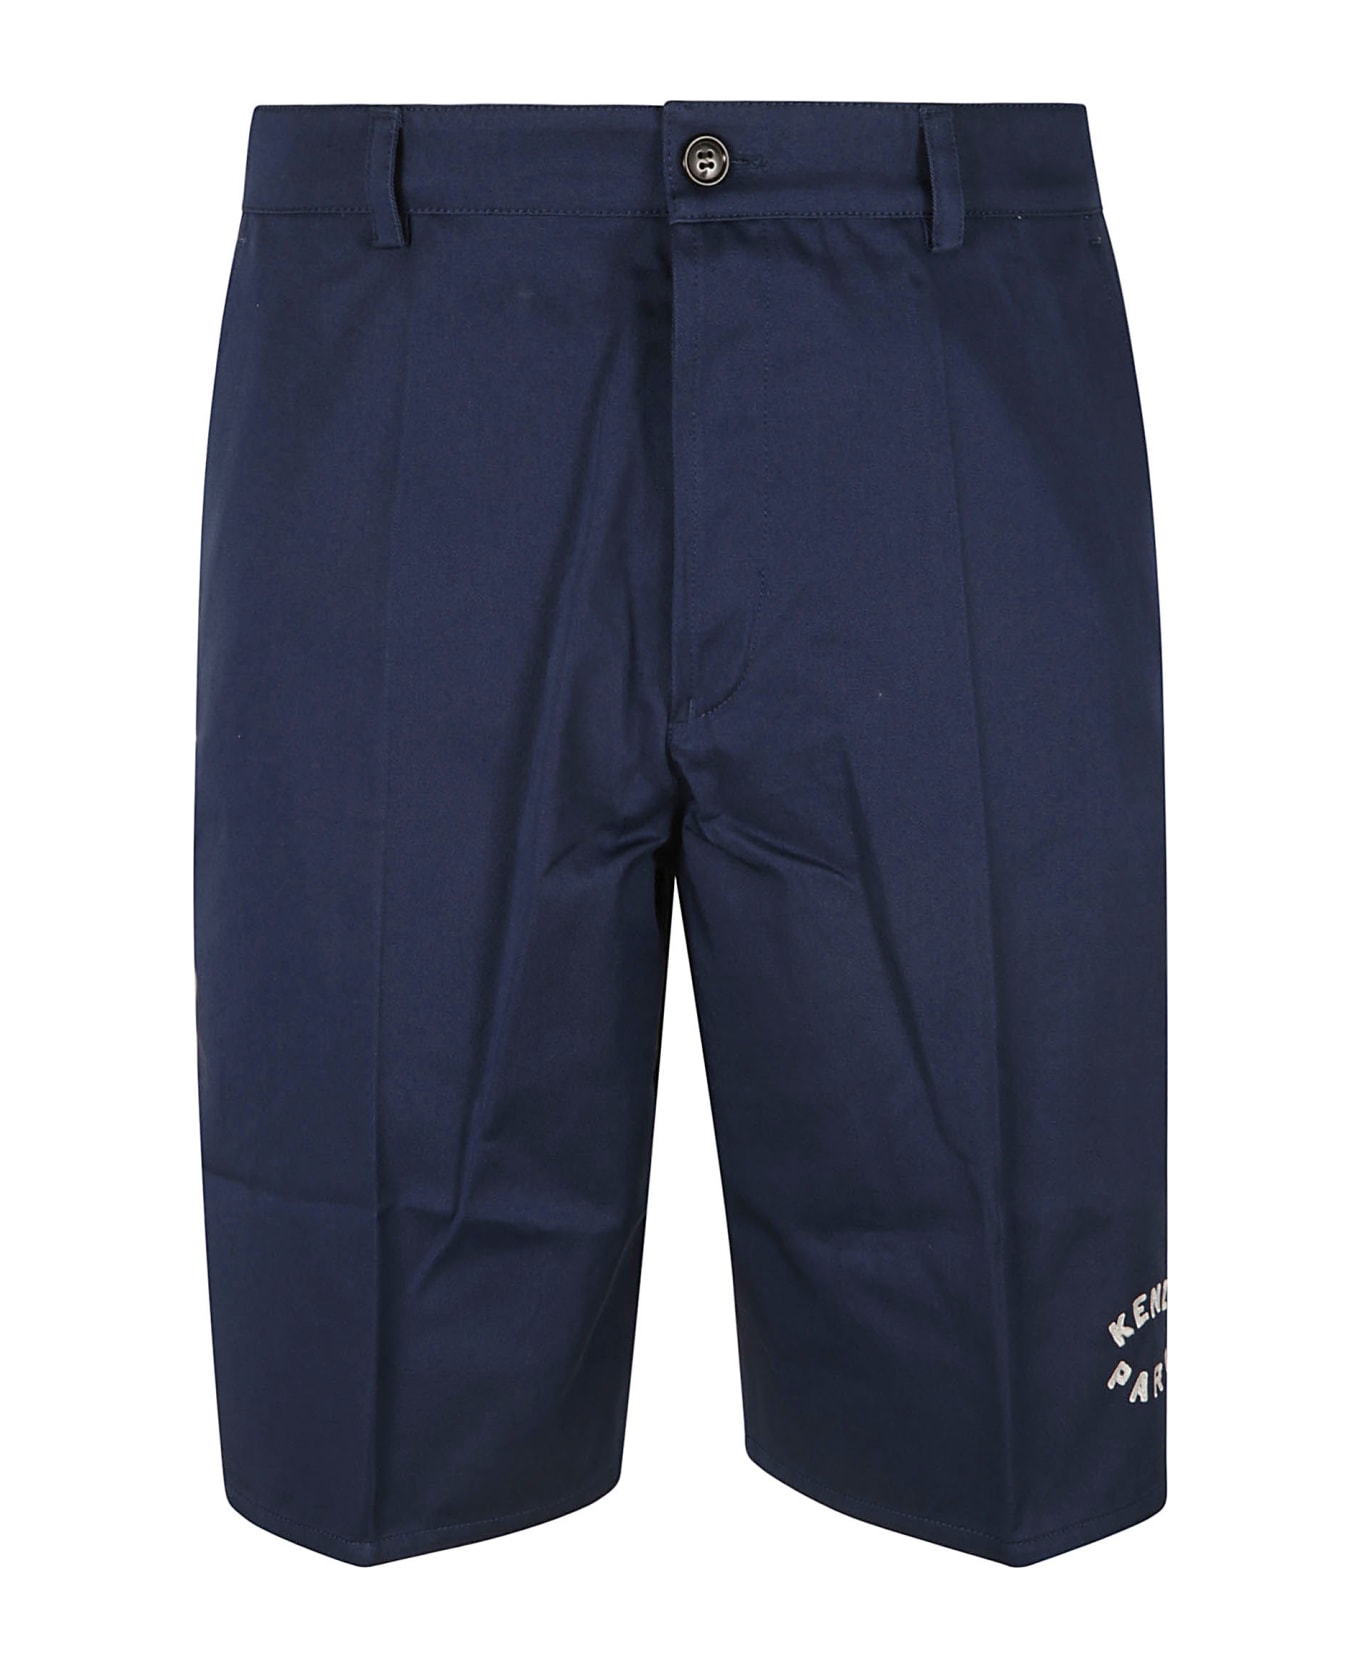 Kenzo Chino Shorts - Navy